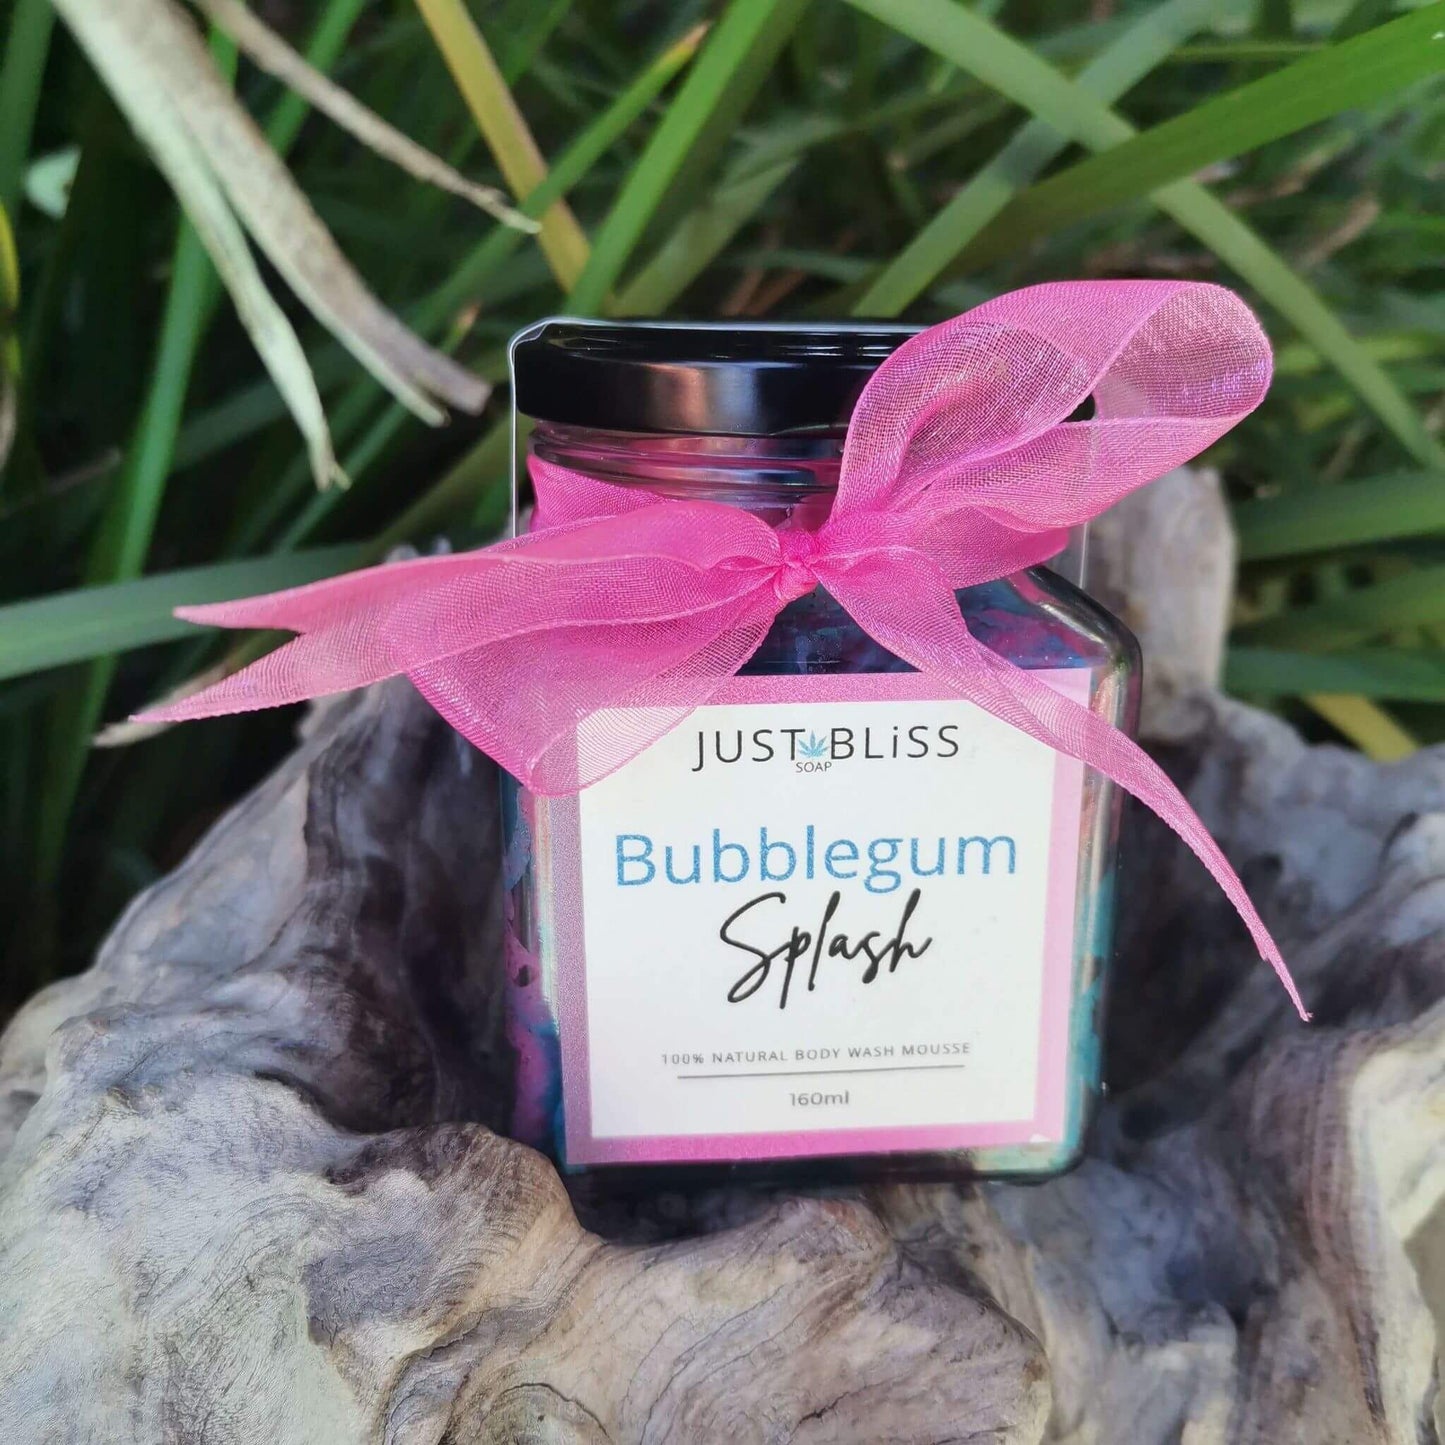 JUSTBLISS: bubblegum splash bath and shower mousse